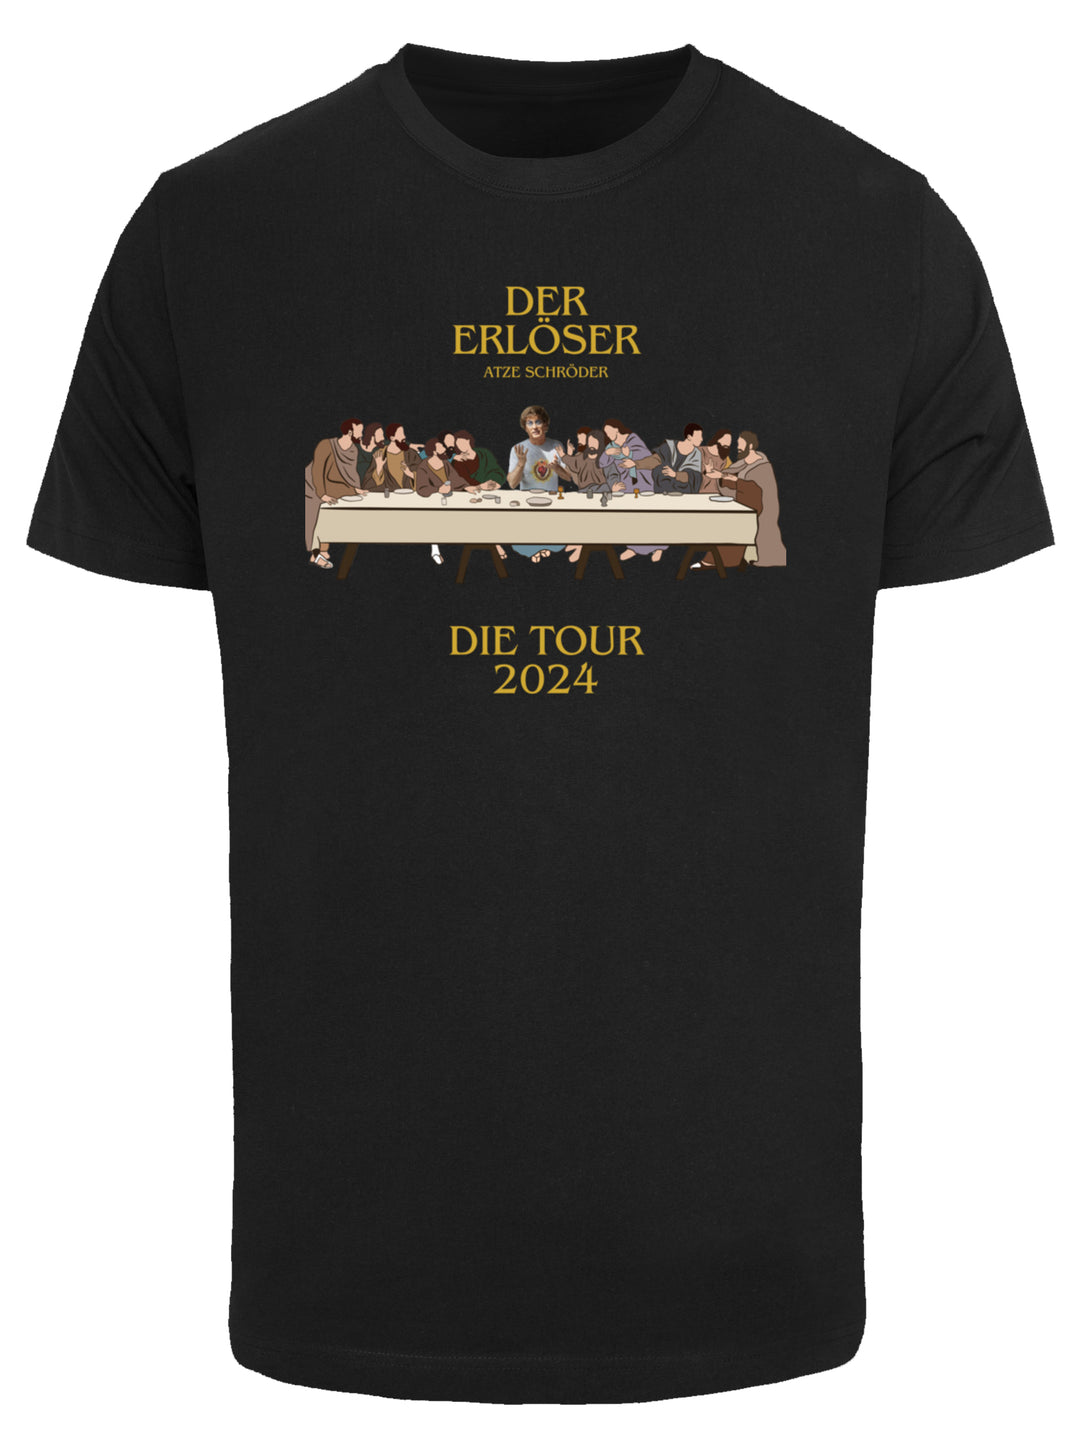 Der Erlöser - Die Tour 2024 and Atze with T-Shirt Round Neck